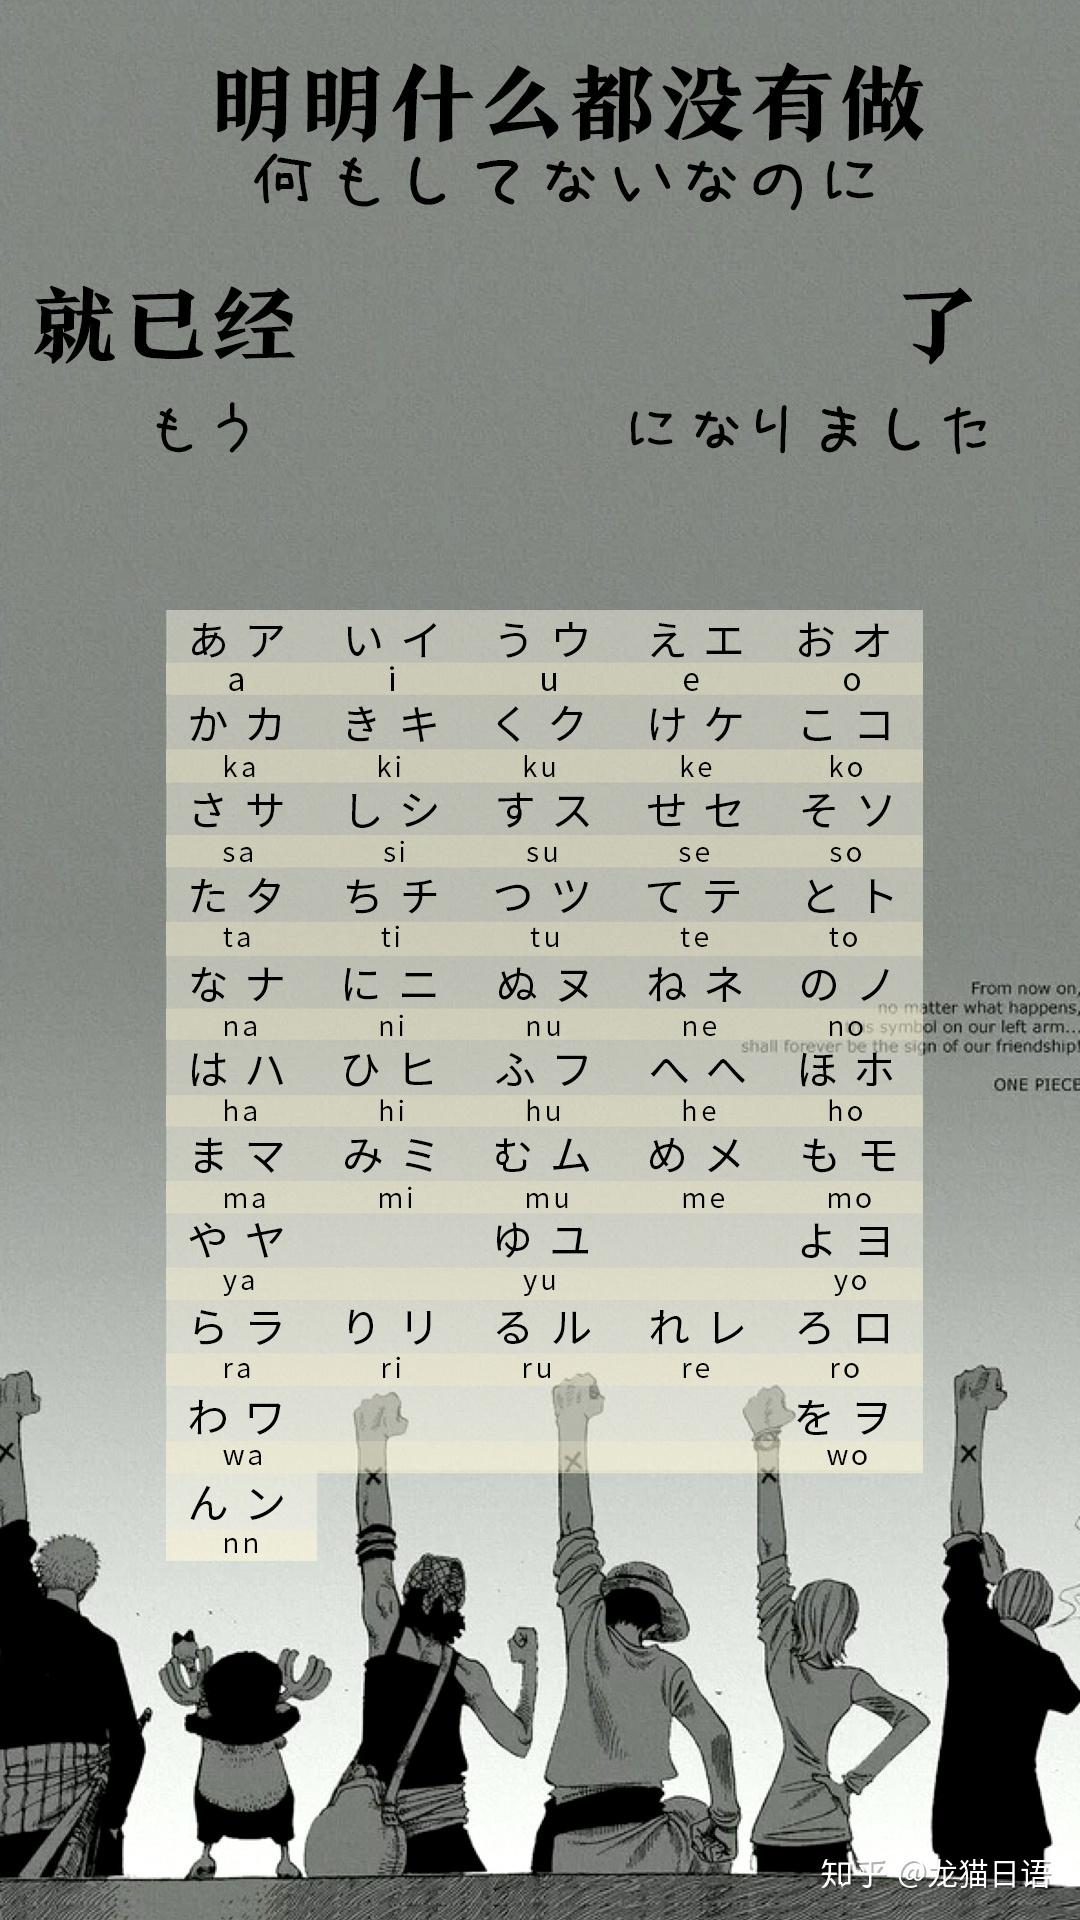 有没有日语五十音图好看的壁纸呢